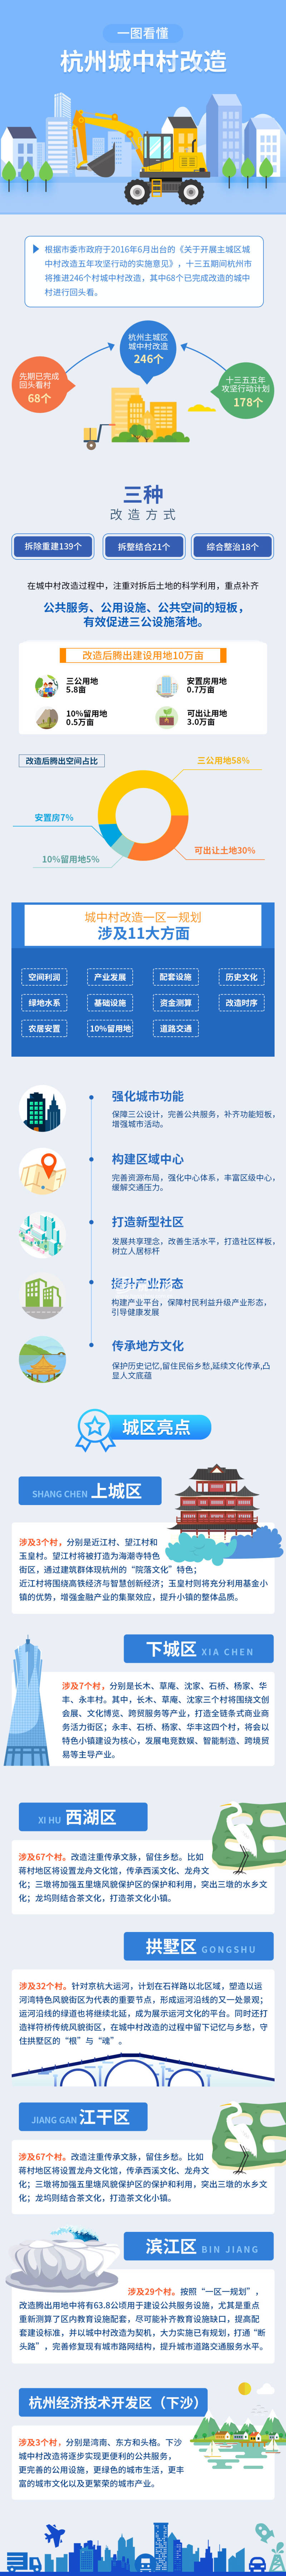 一图看懂杭州城中村改造(01)